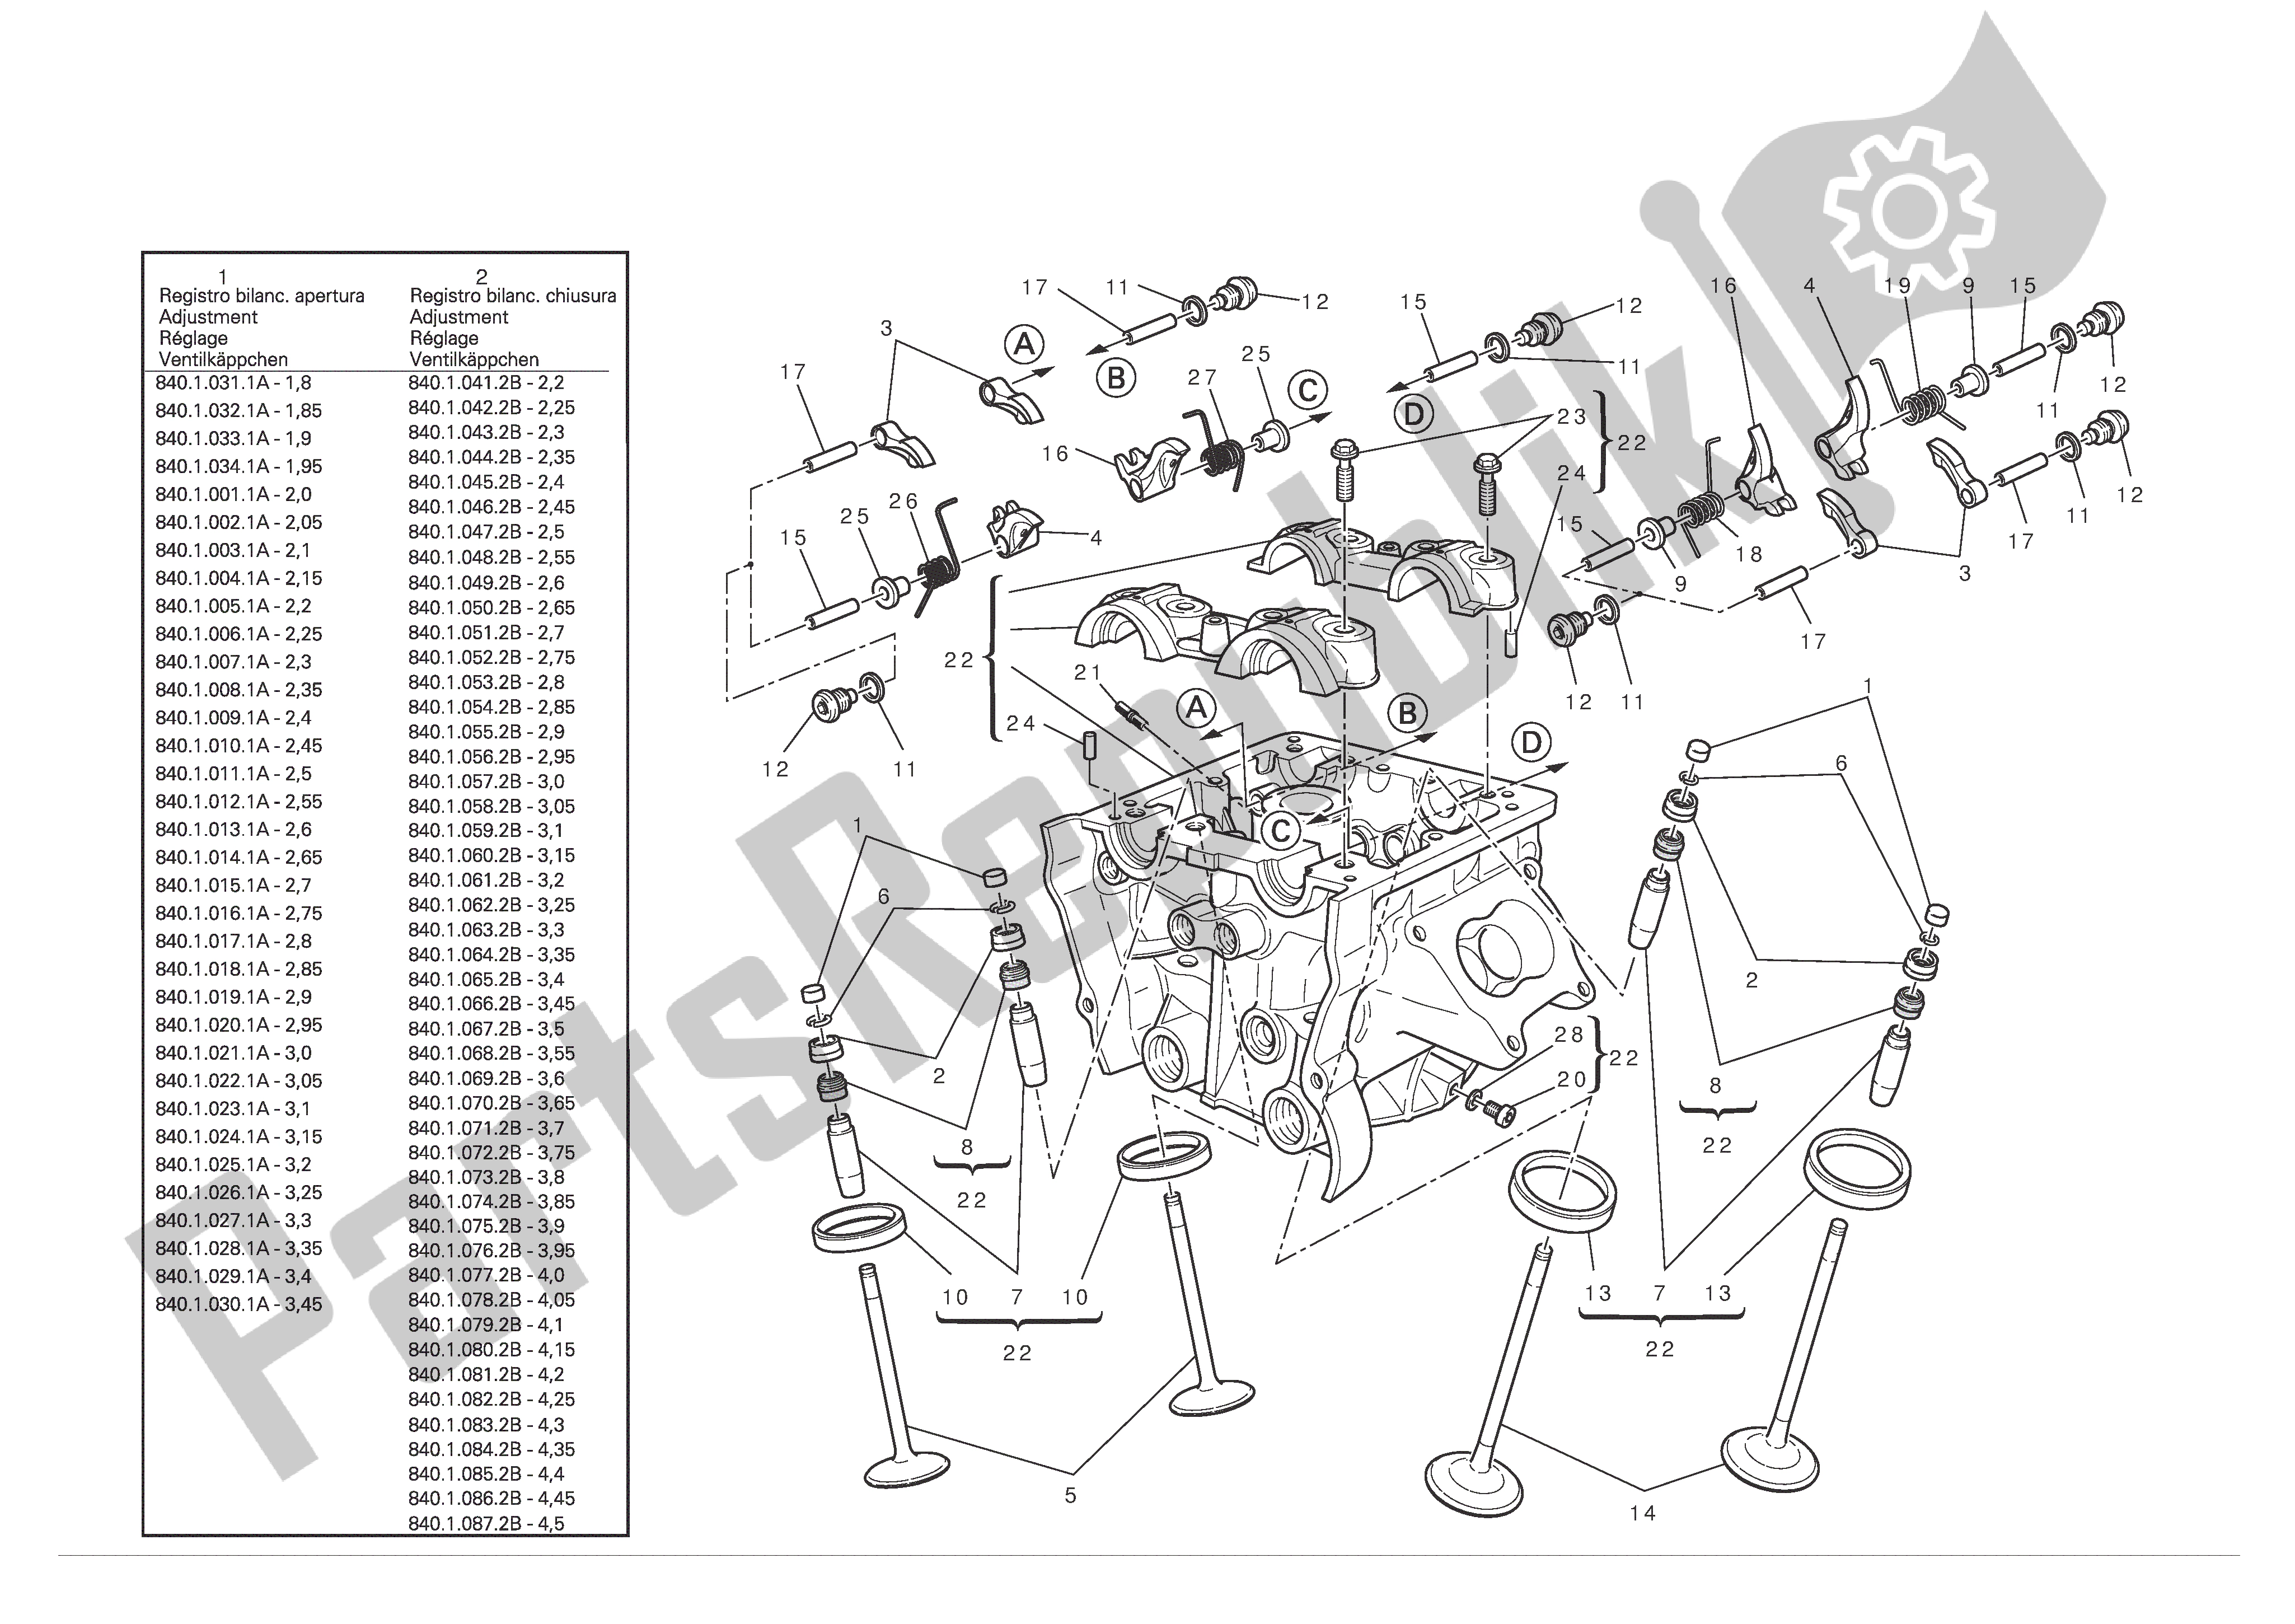 Toutes les pièces pour le Culasse Verticale du Ducati Multistrada S ABS Pikes Peak 1200 2012